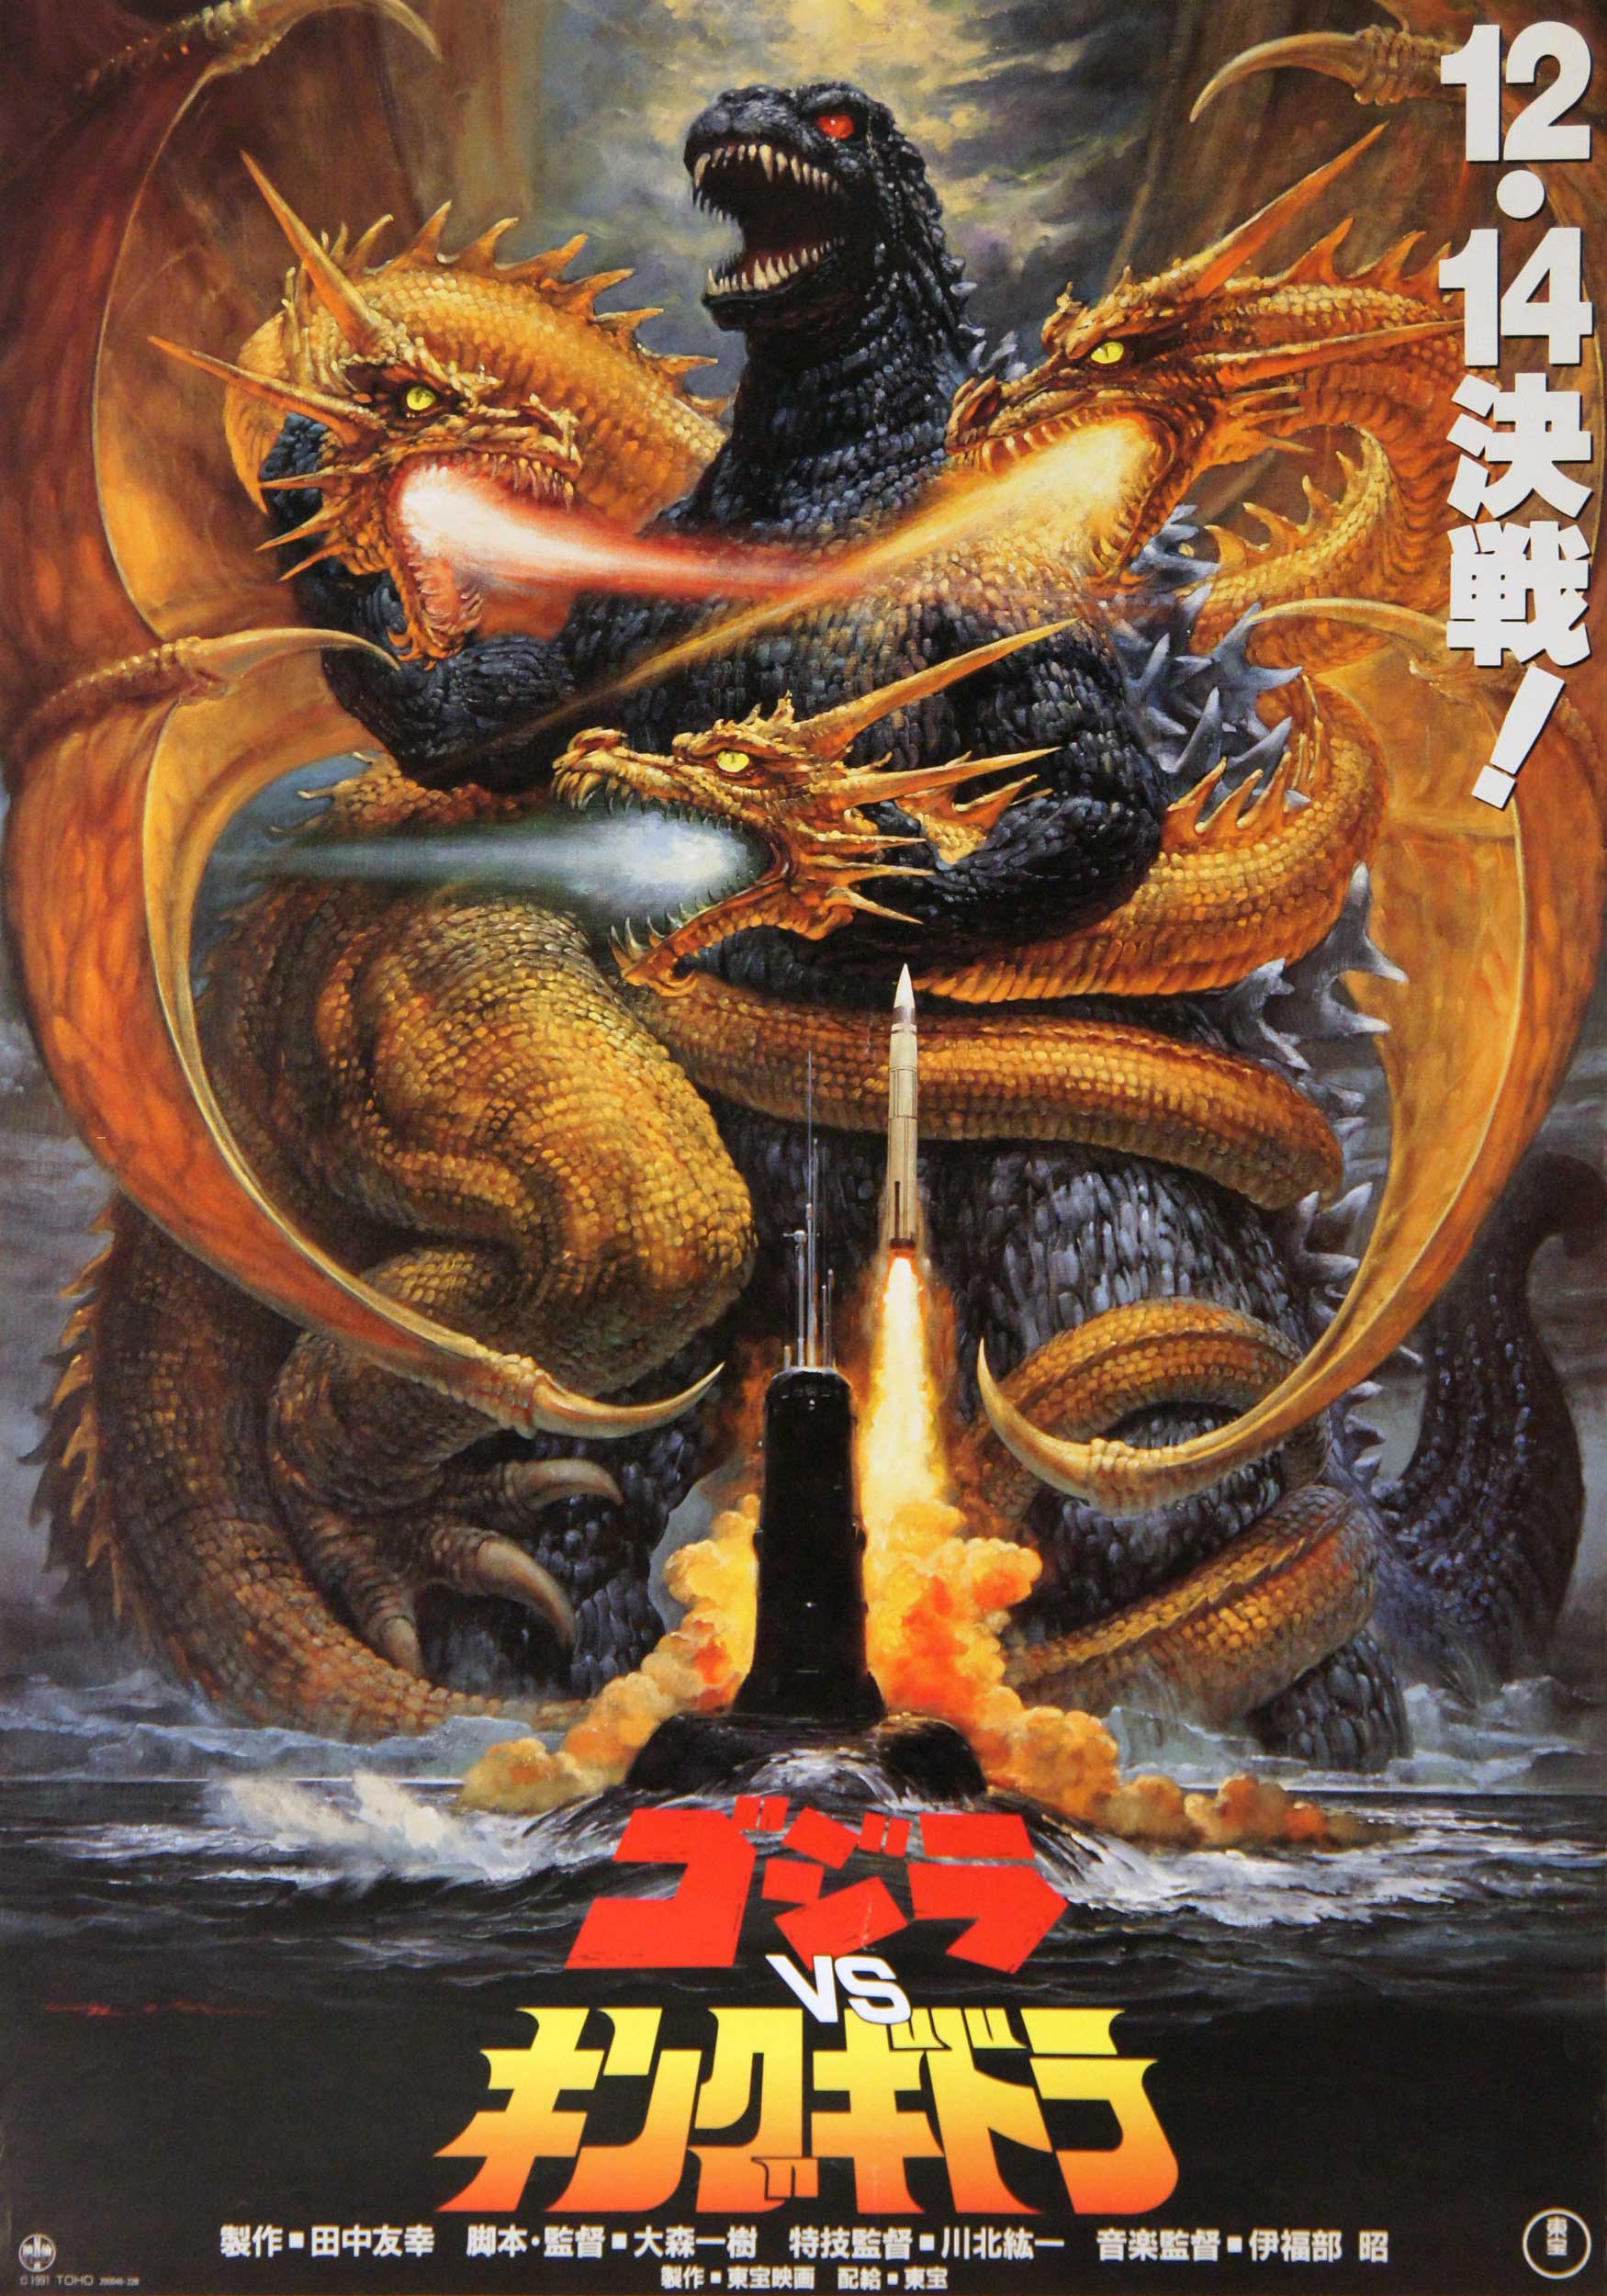 Godzilla Vs. King Ghidorah #6